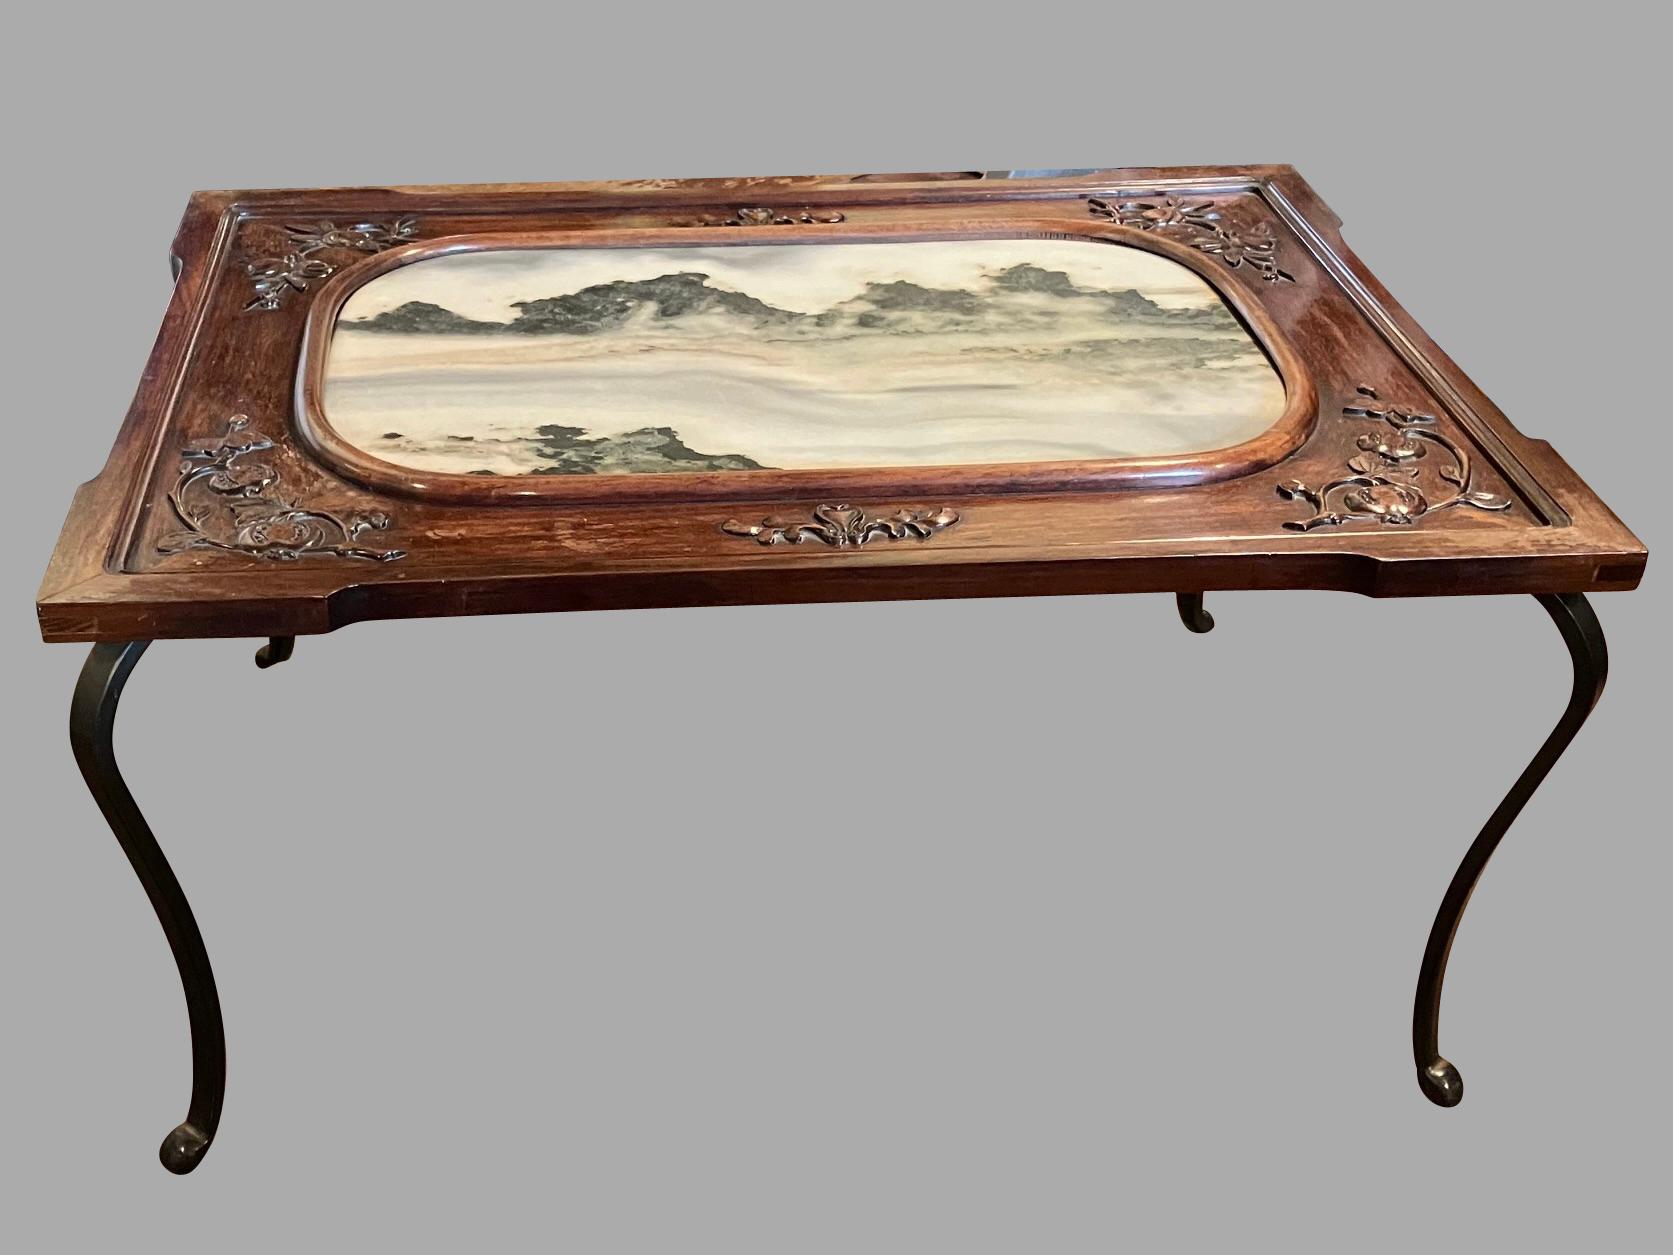 Ein wunderschöner, maßgefertigter chinesischer niedriger Tisch, dessen Hartholzplatte mit einem zentralen Marmoreinsatz versehen ist, der eine stilisierte pastorale Berglandschaft darstellt und von Kabriole-Beinen aus Stahl getragen wird. Die